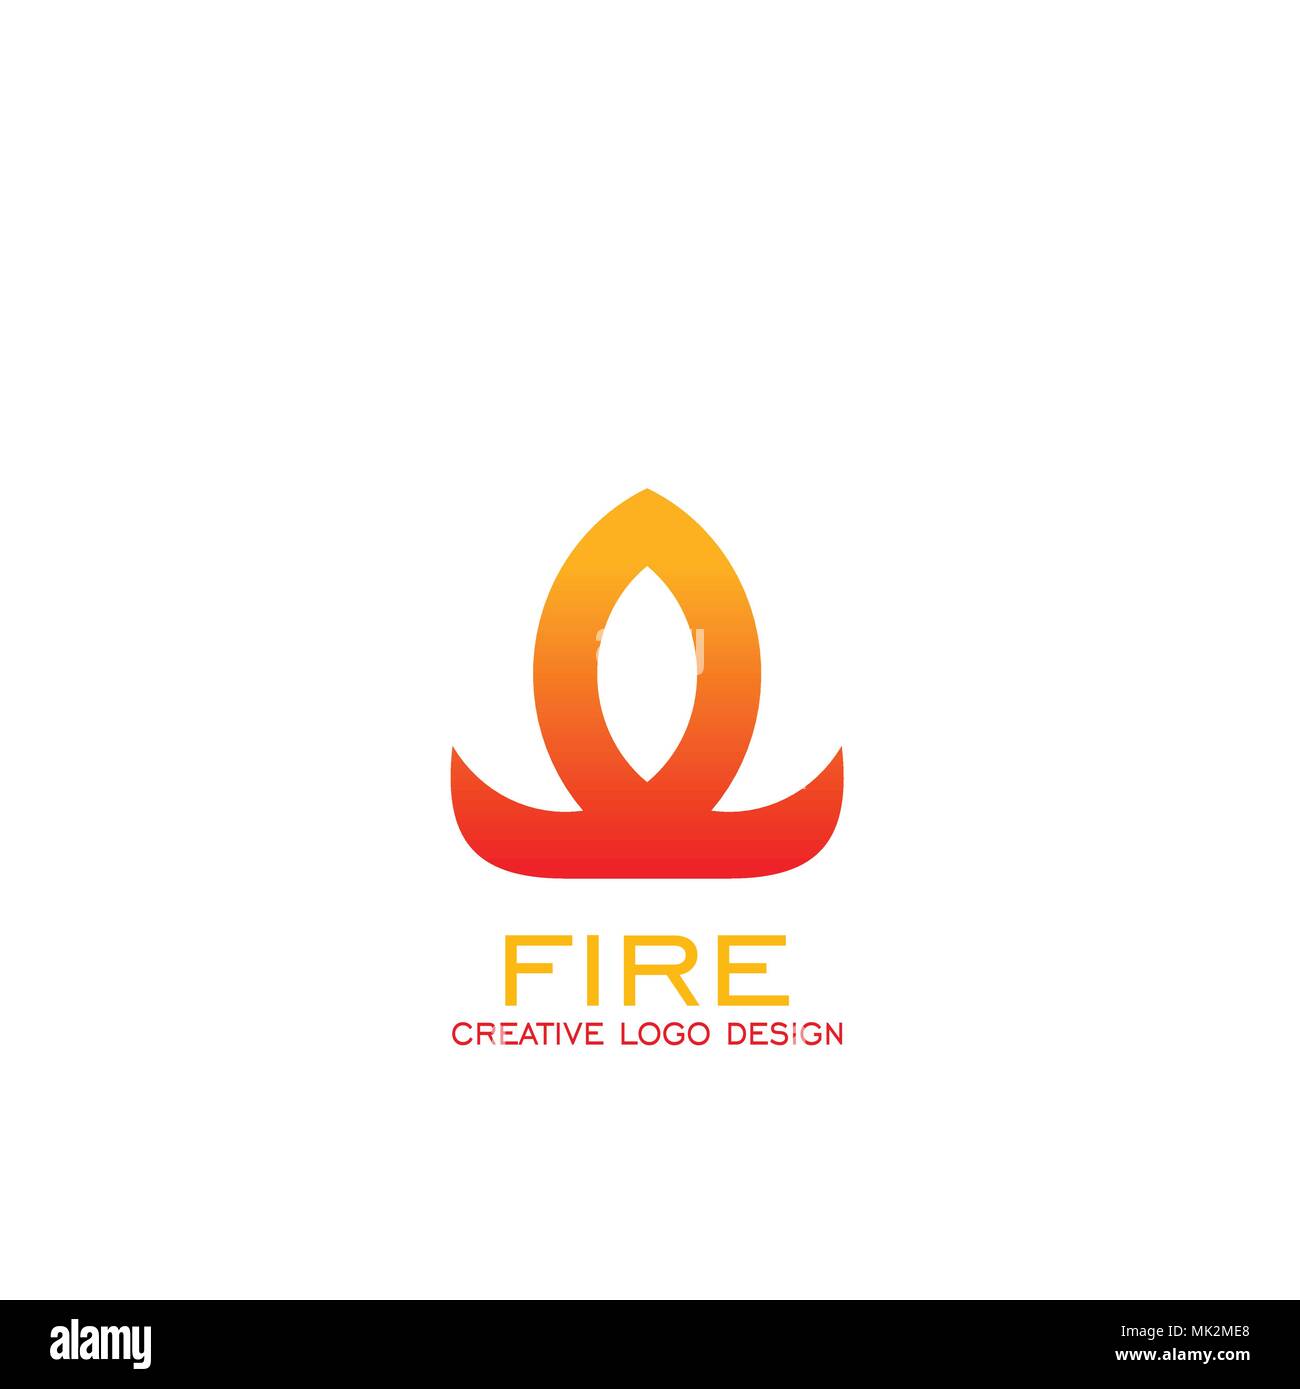 Fire logo design, simple flame logo, creative logo design, vector icons. Stock Vector